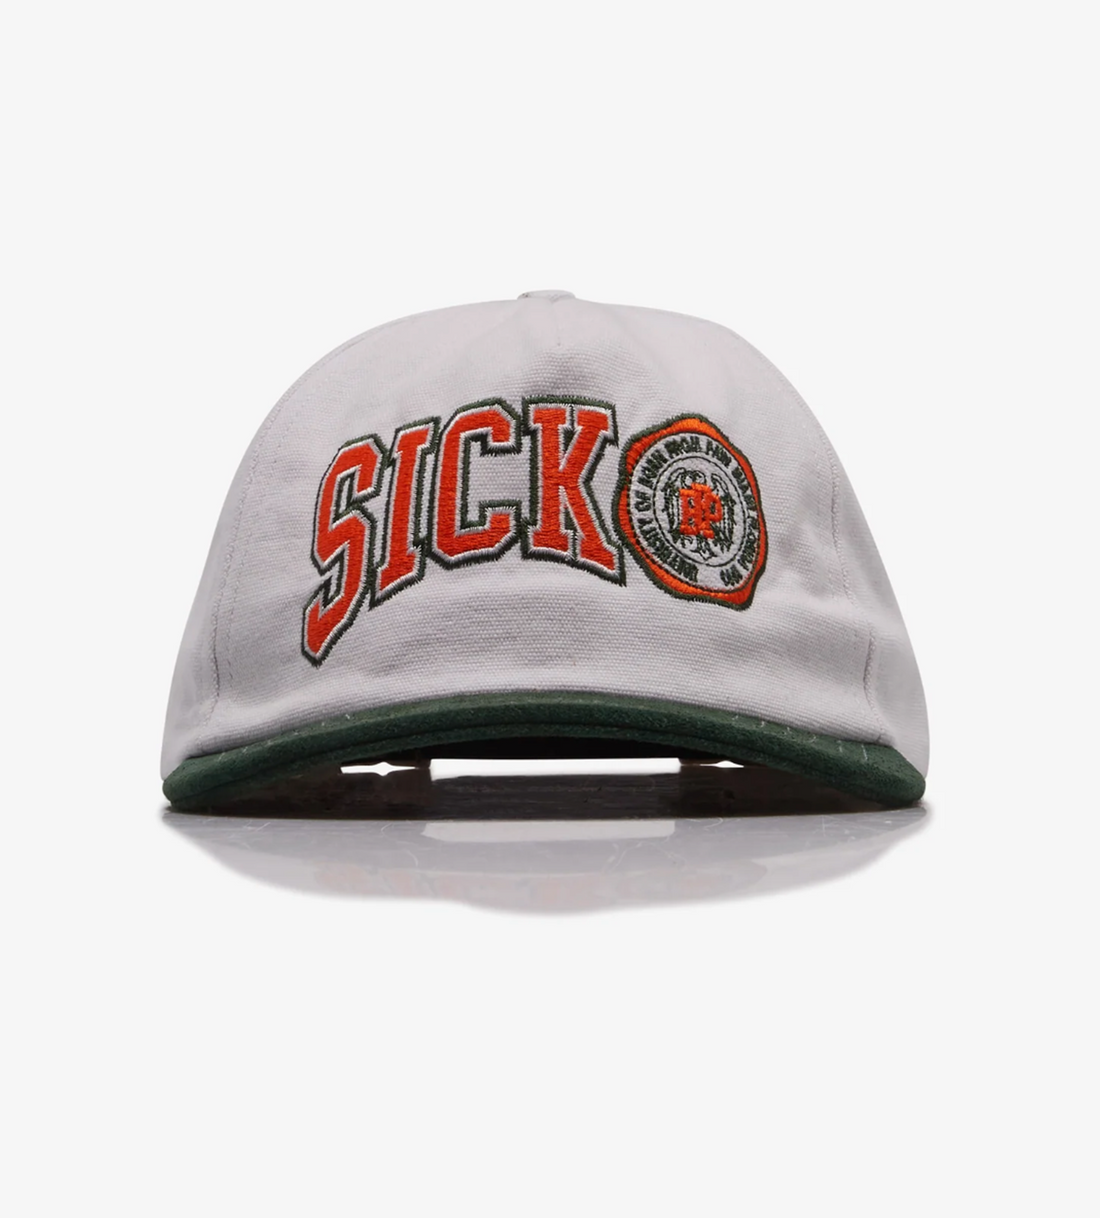 Sicko Trucker Brim Hat White/Green